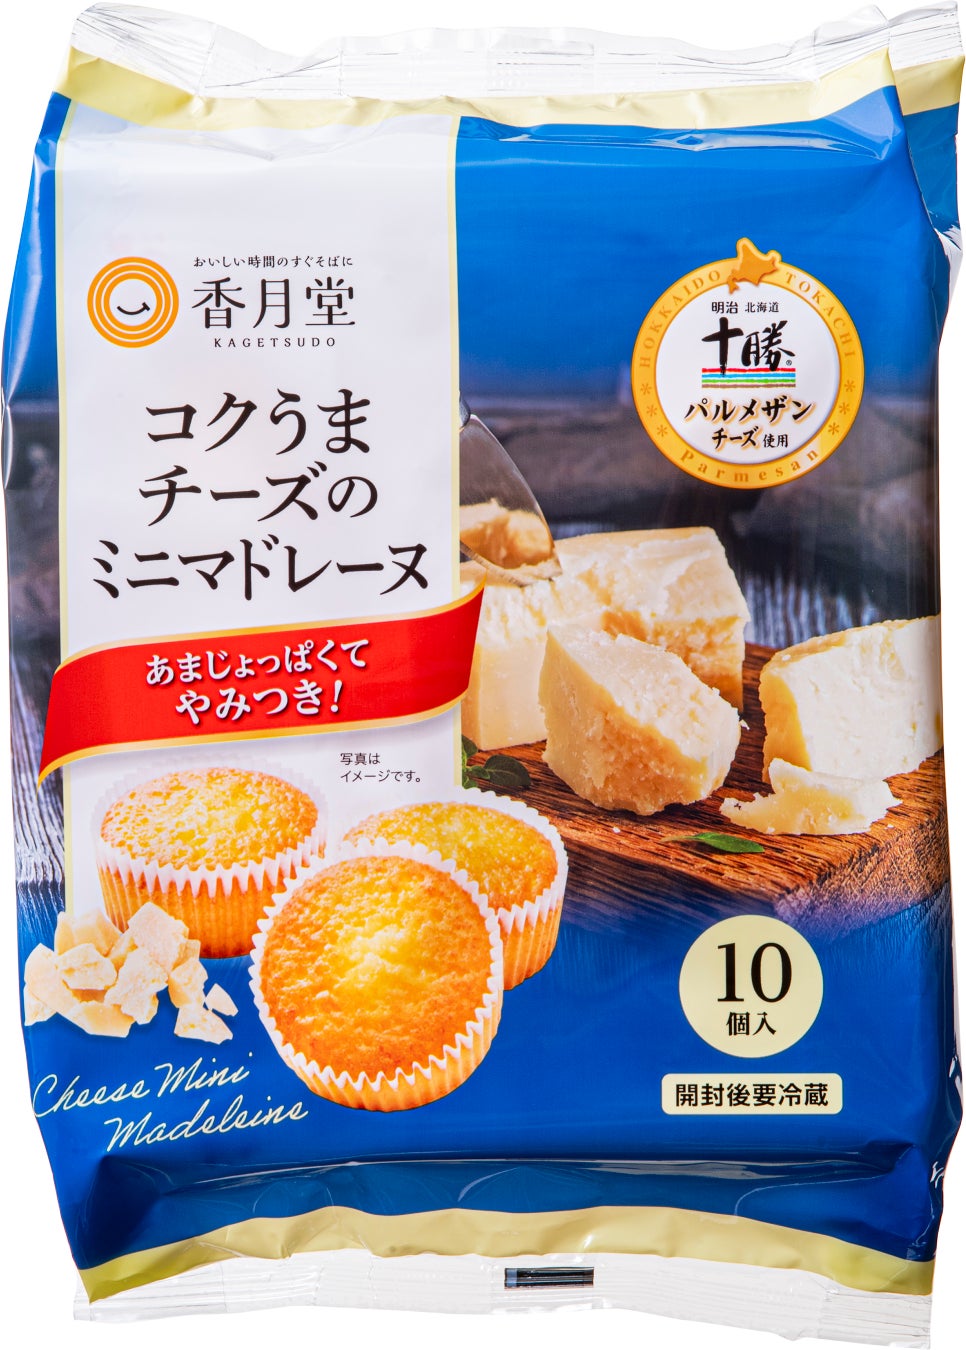 【新商品】チーズの味わい豊かな「コクうまチーズのミニマドレーヌ」を発売